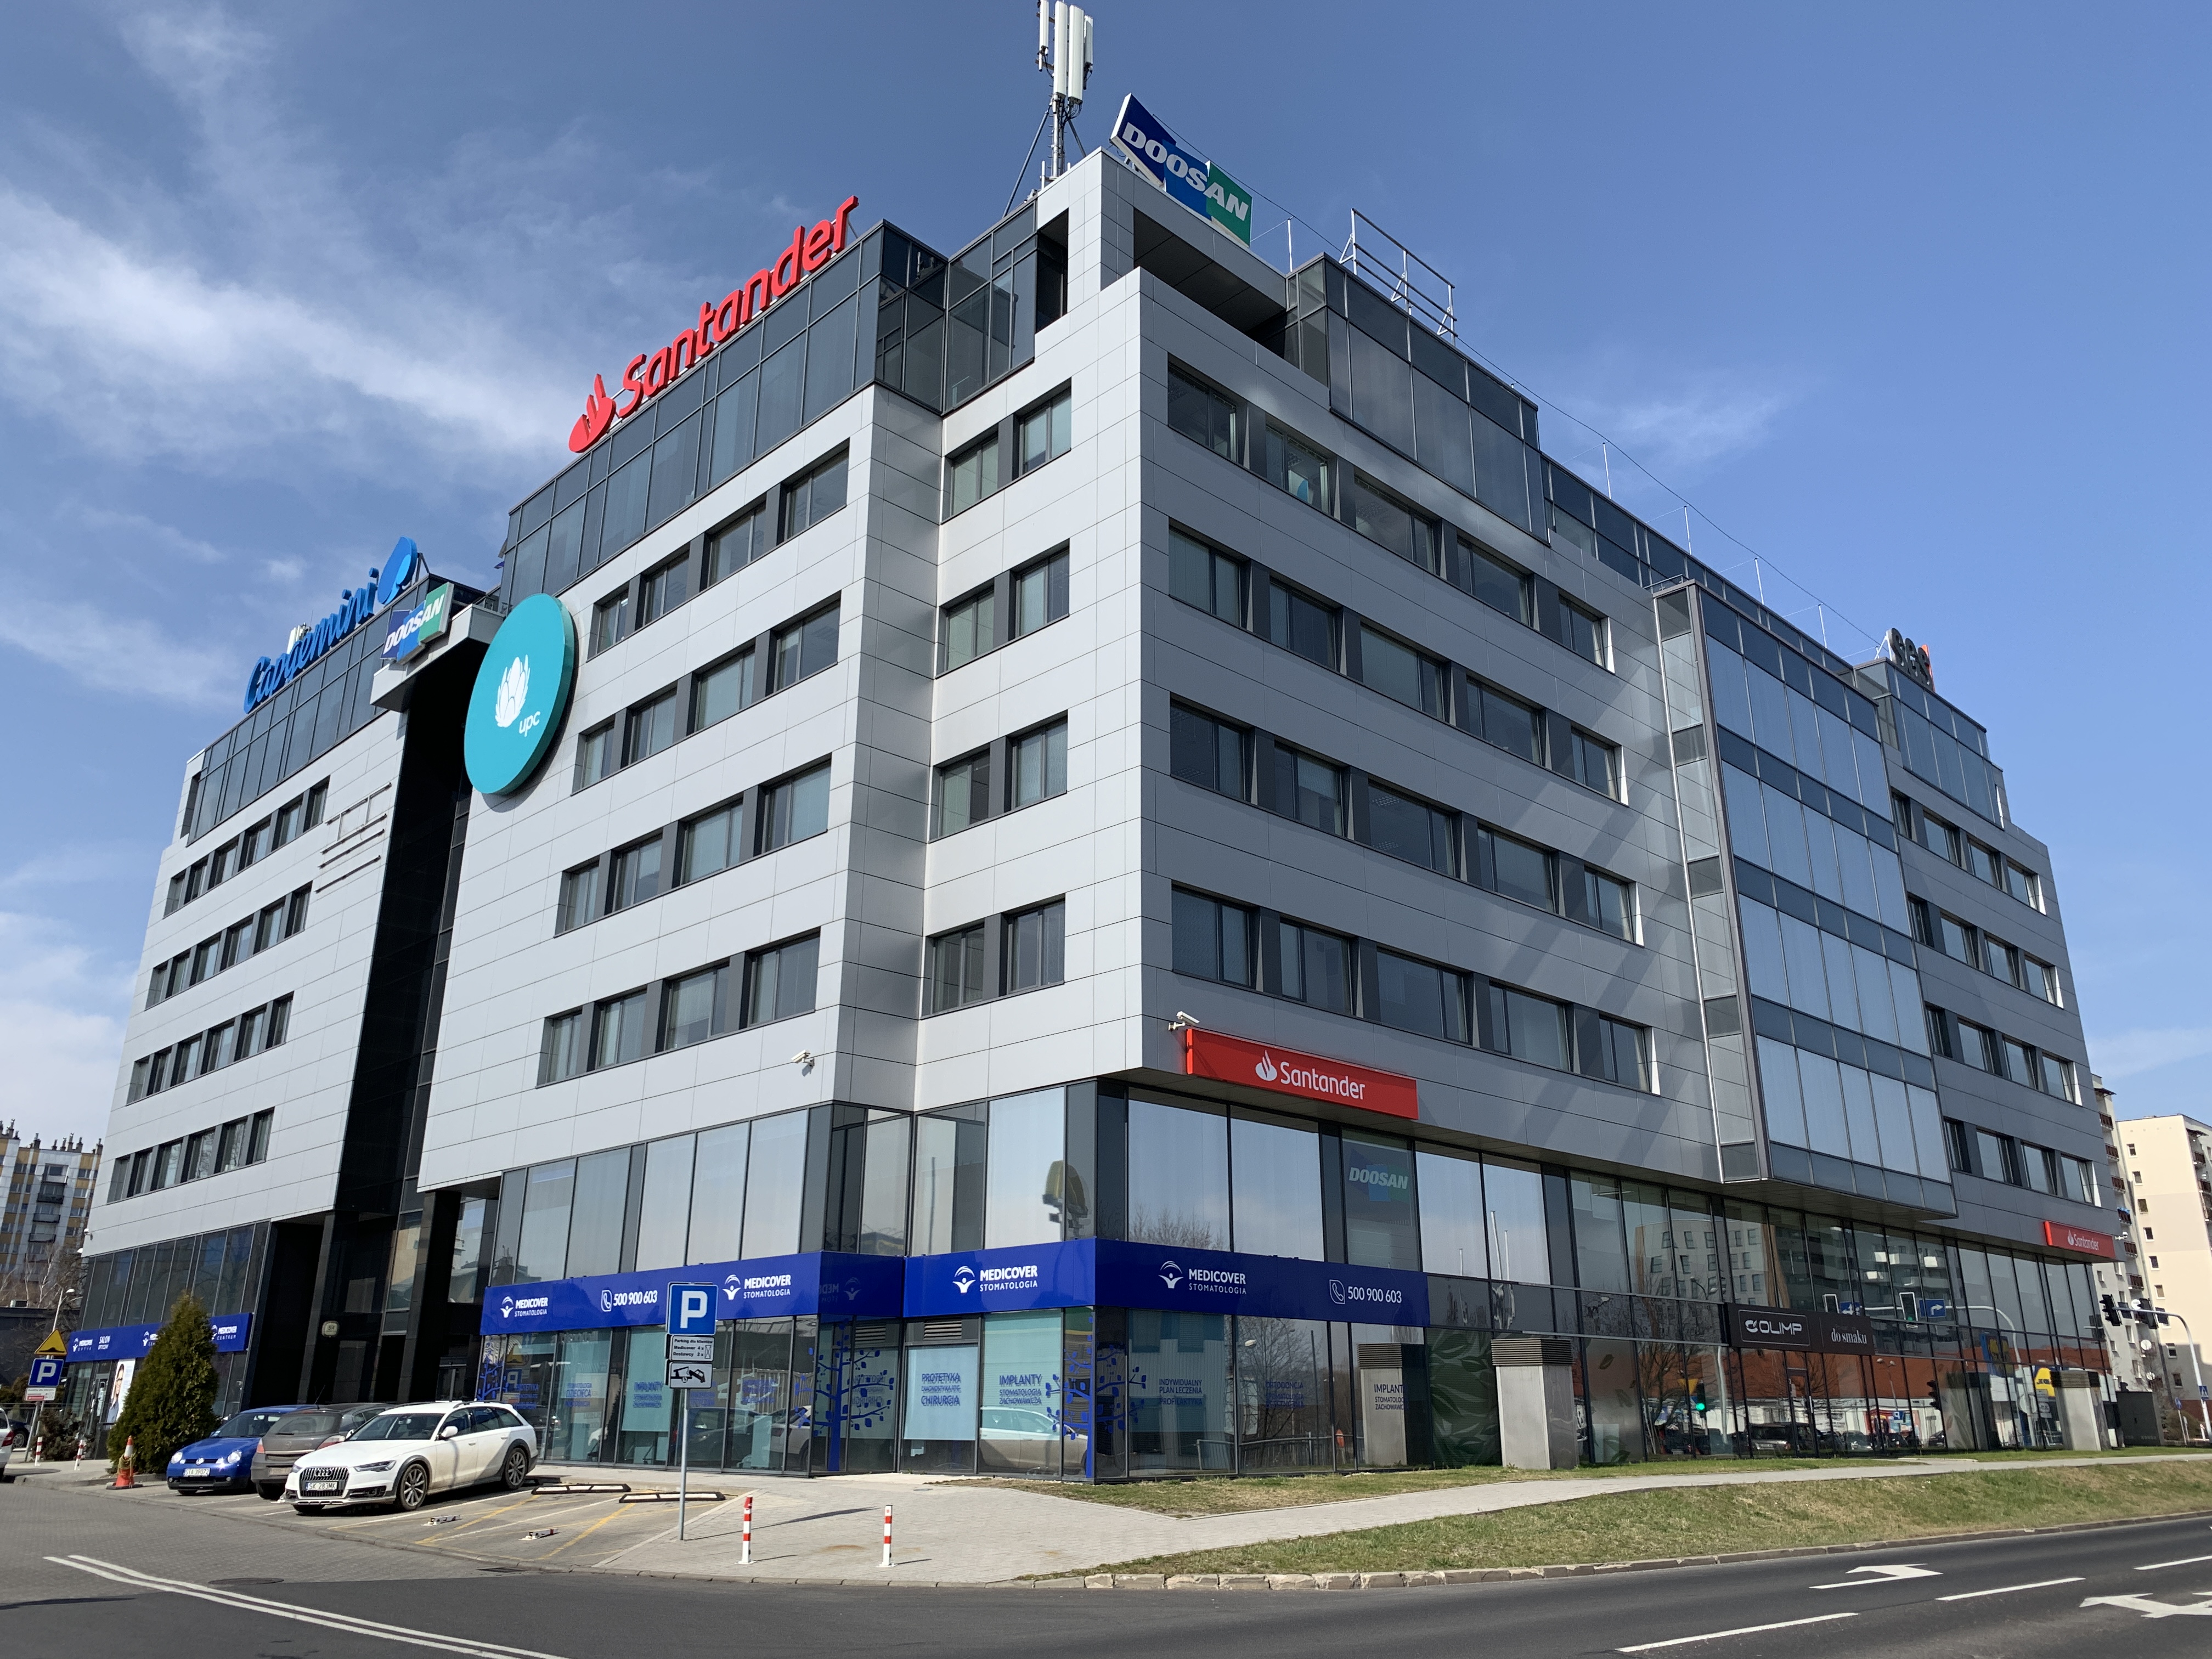 M7 acquired Atrium in Katowice